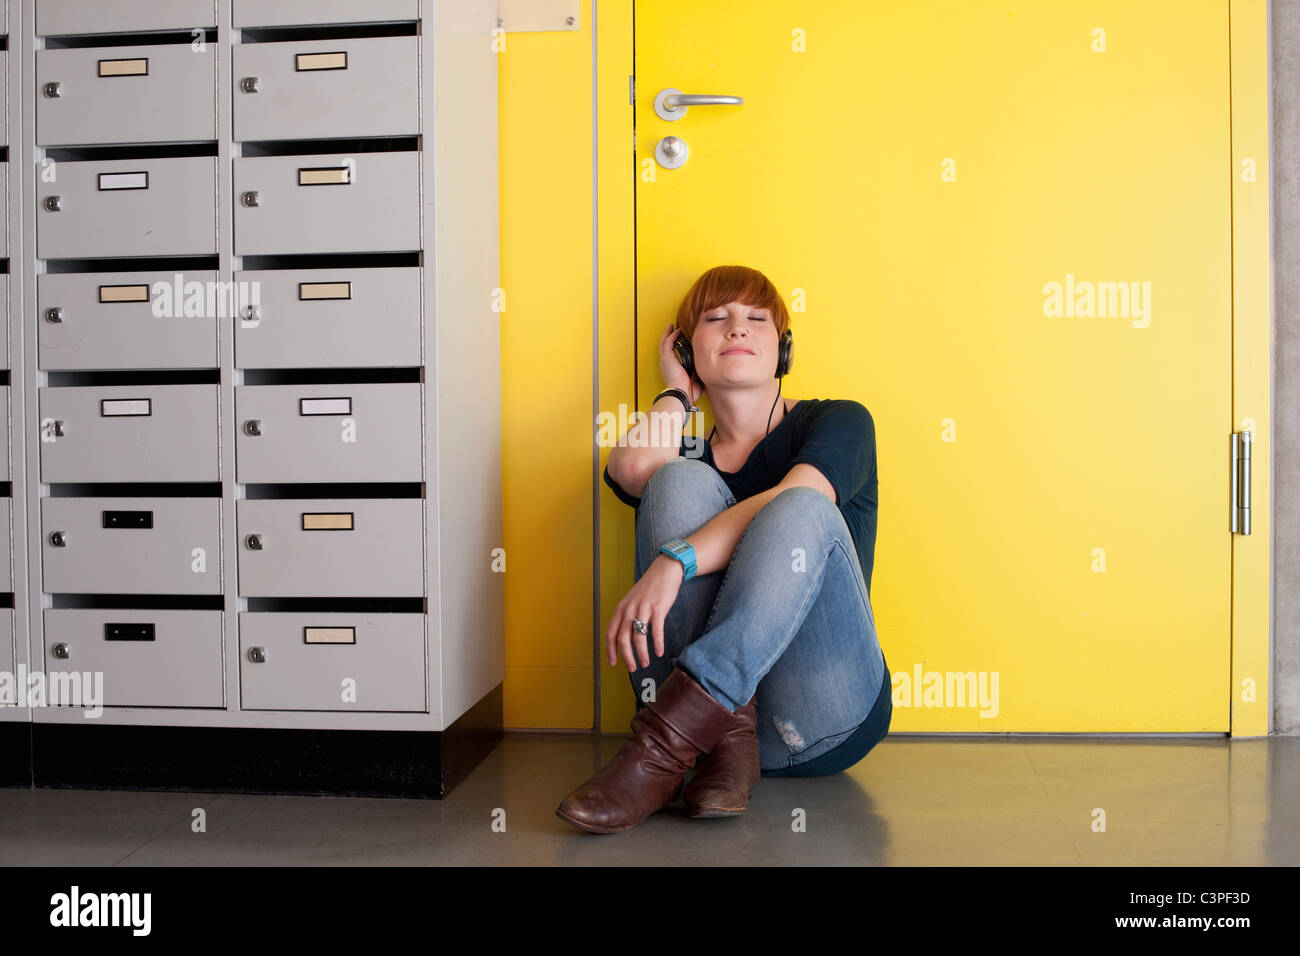 Alemania, Leipzig, joven mujer sentada y escuchando música en el vestuario Foto de stock